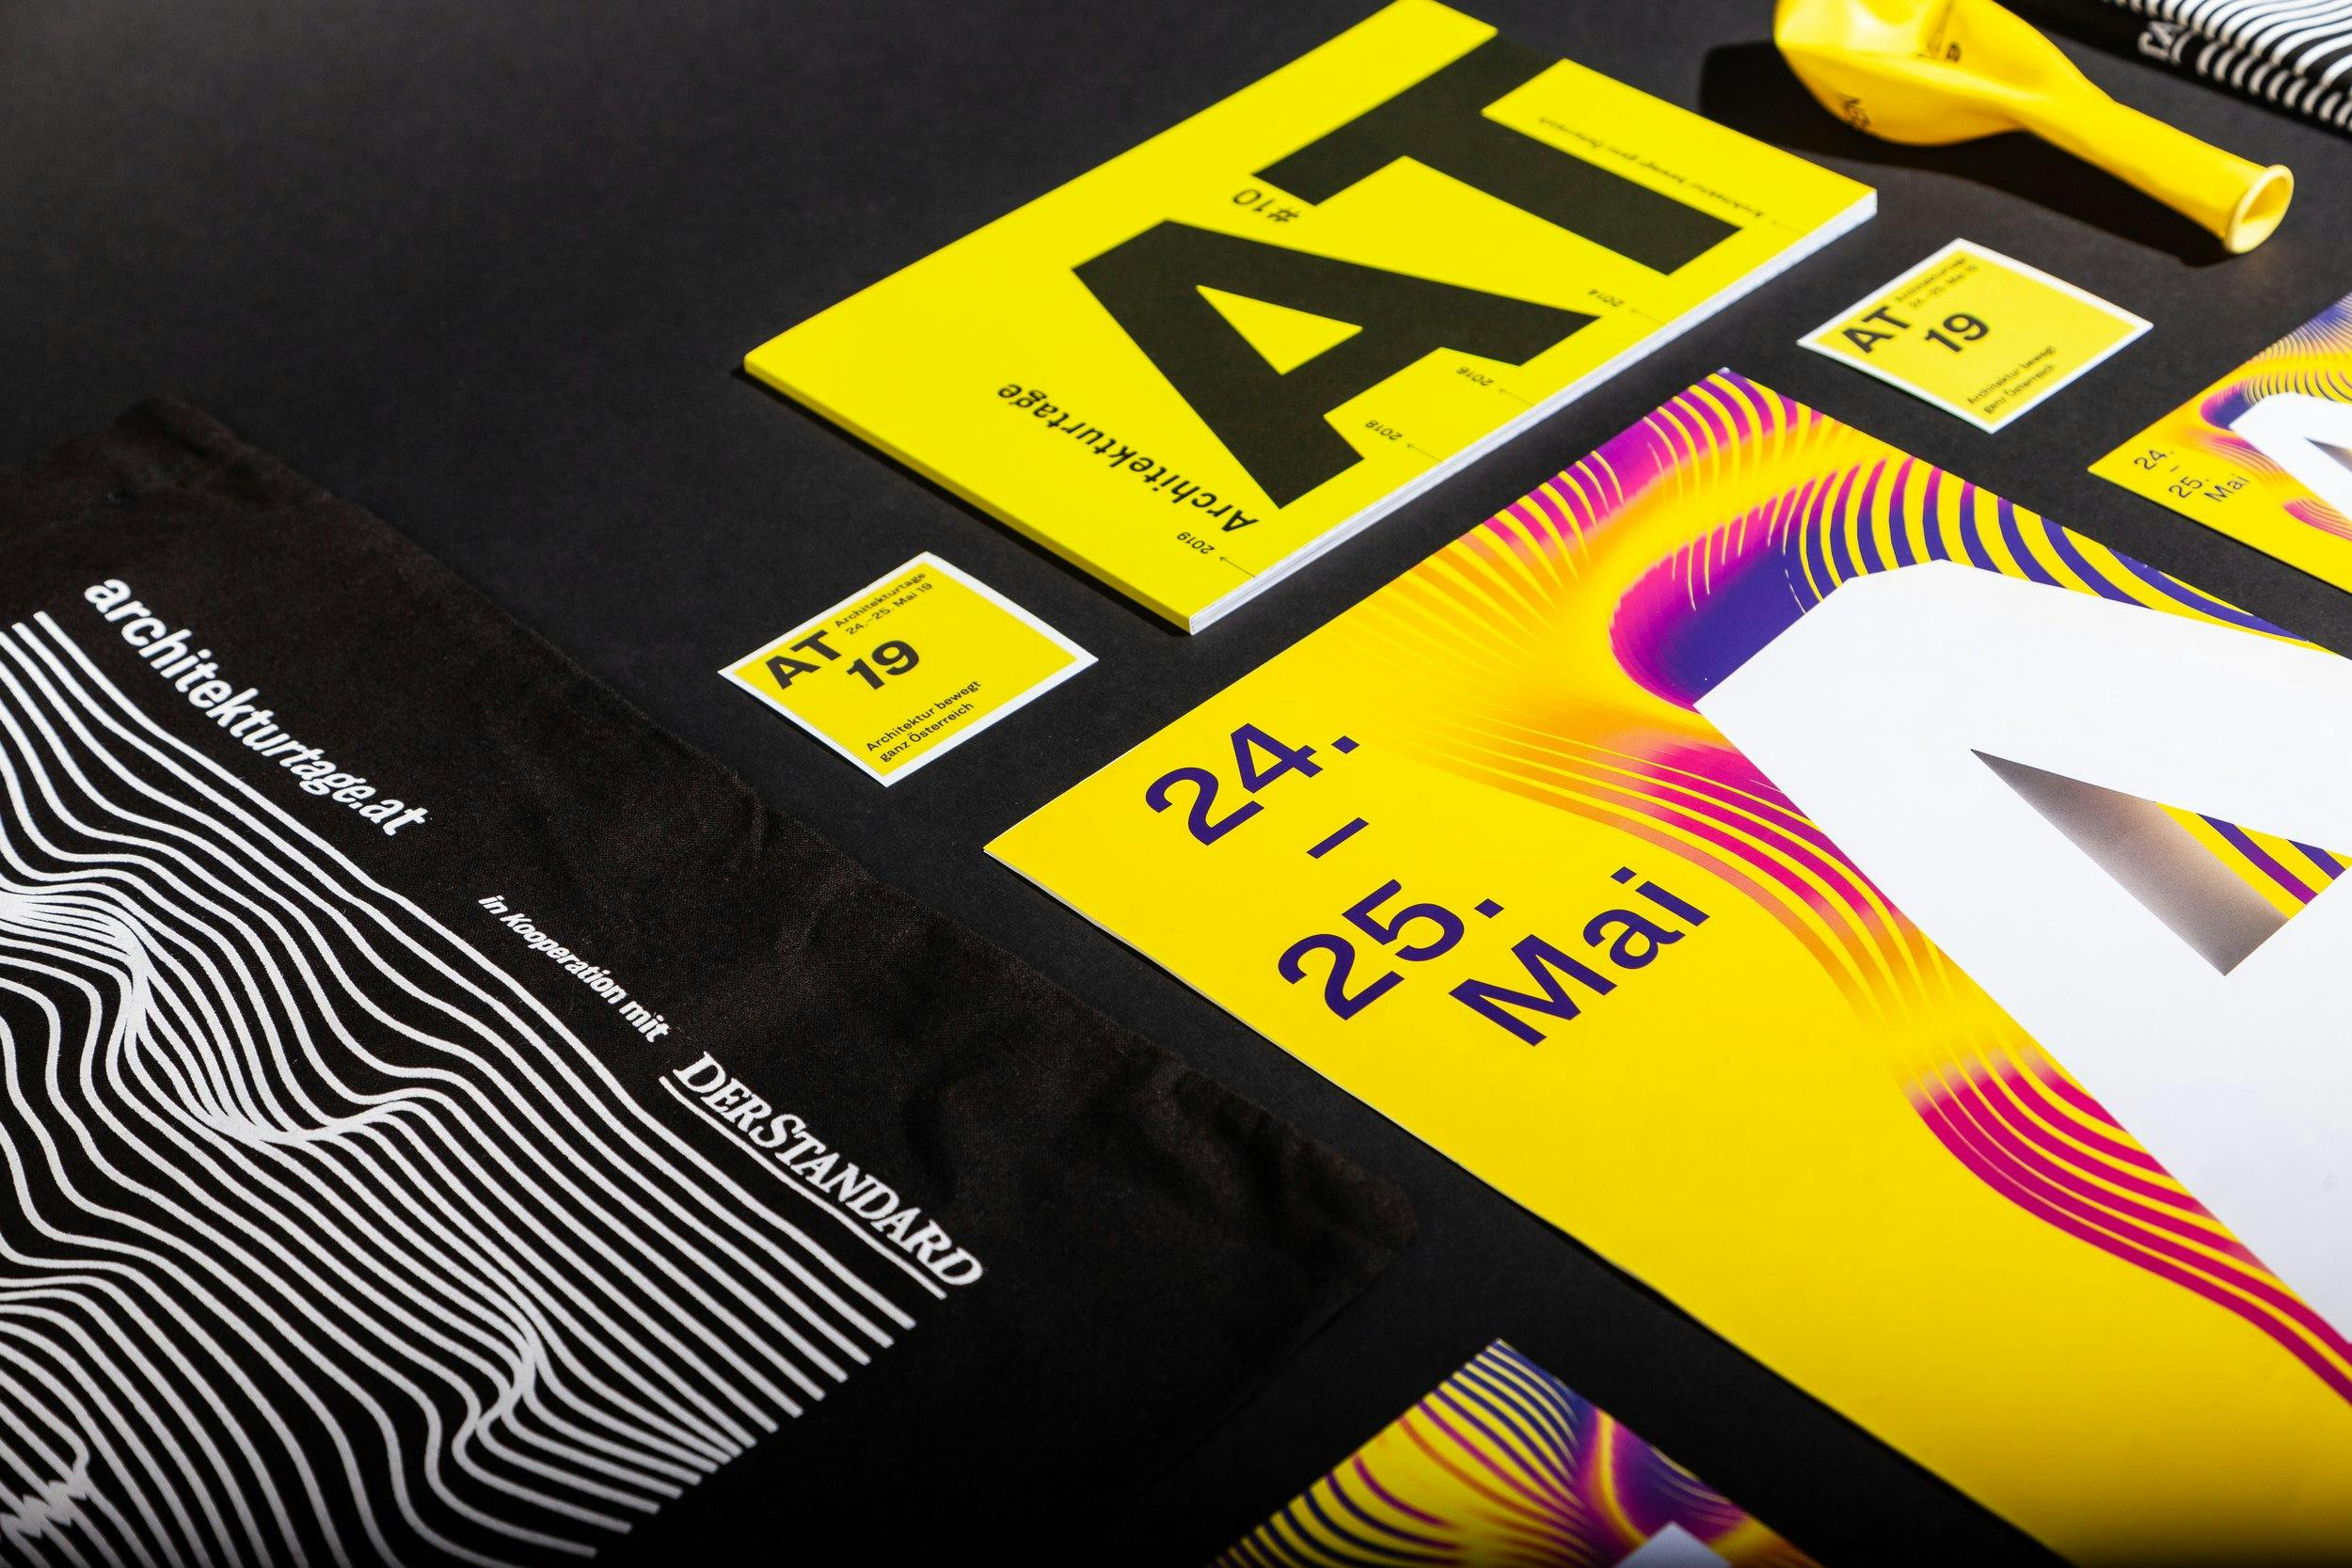 Architekturtage2019-Branding-Tasche-Sticker-Plakat-Detail-schwarz © Patricia Keckeis